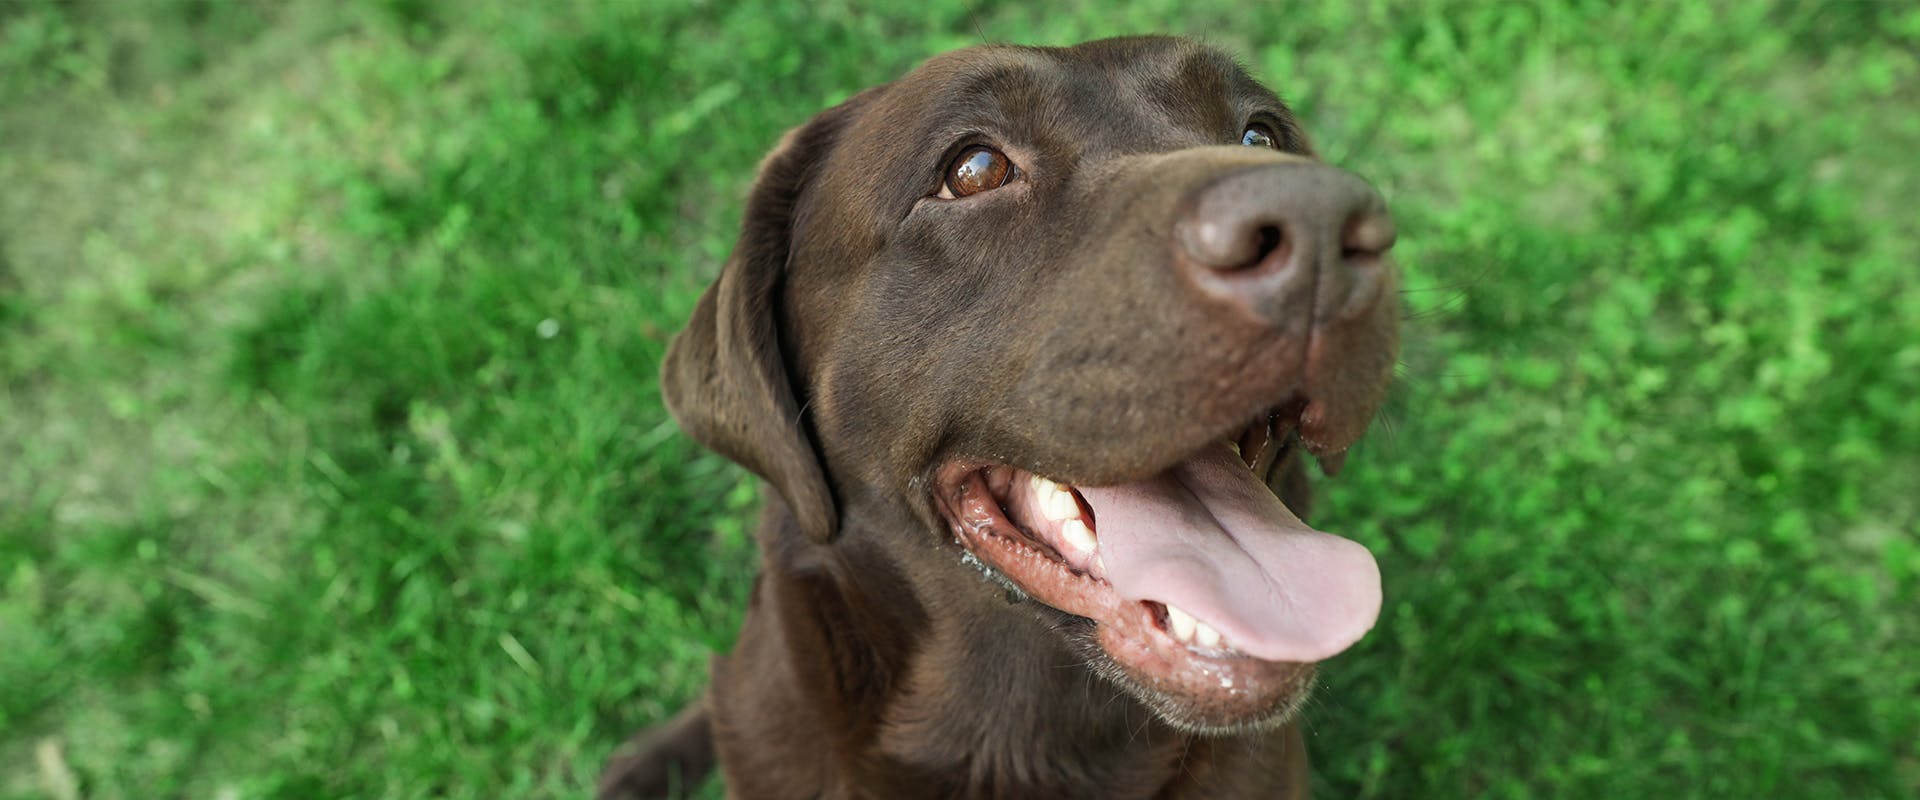 A happy looking chocolate Labrador Retriever